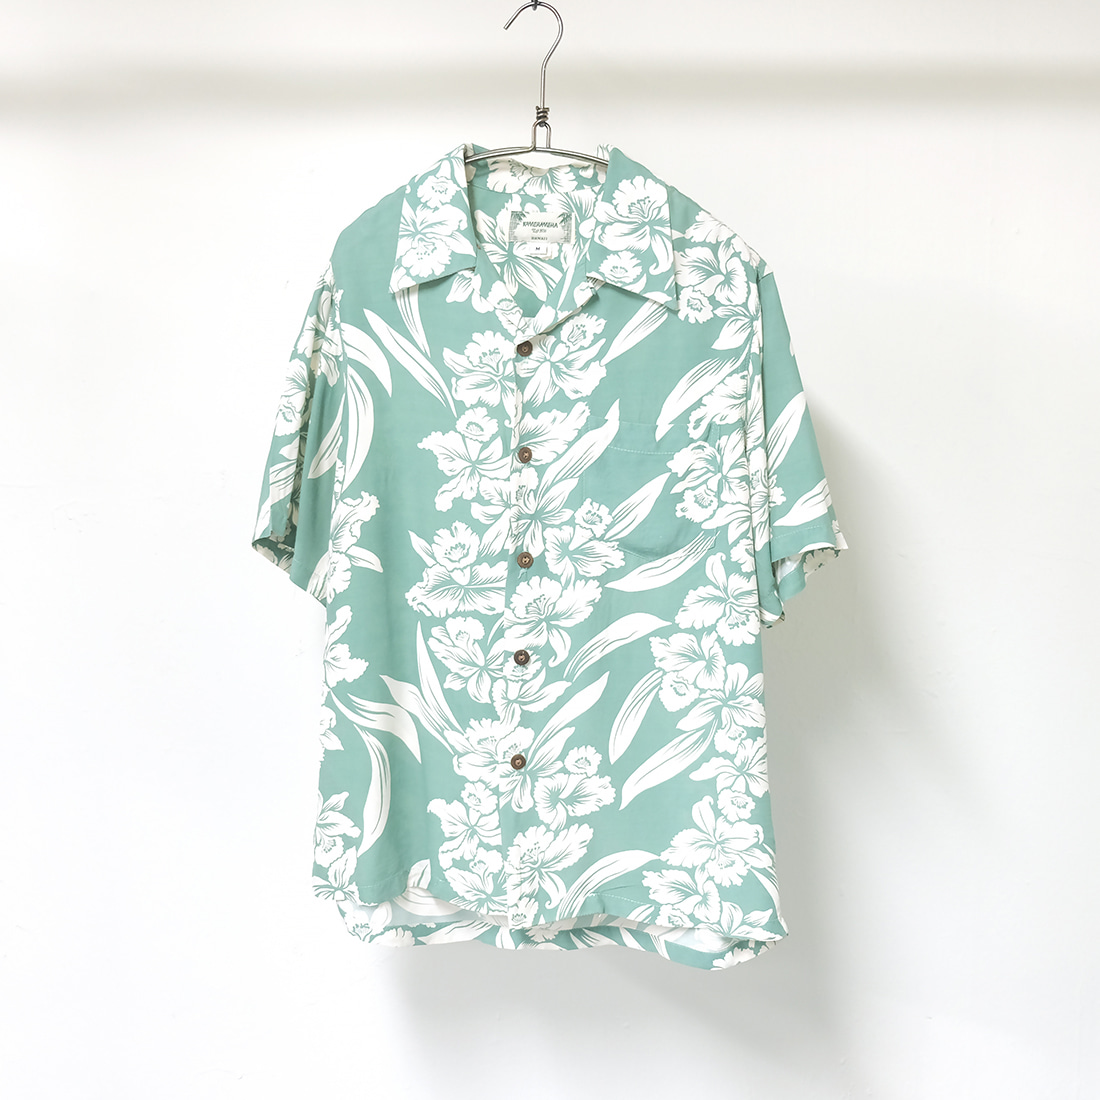 카메하메하 / Made in hawaii  Kamehameha rayon aloha shirt